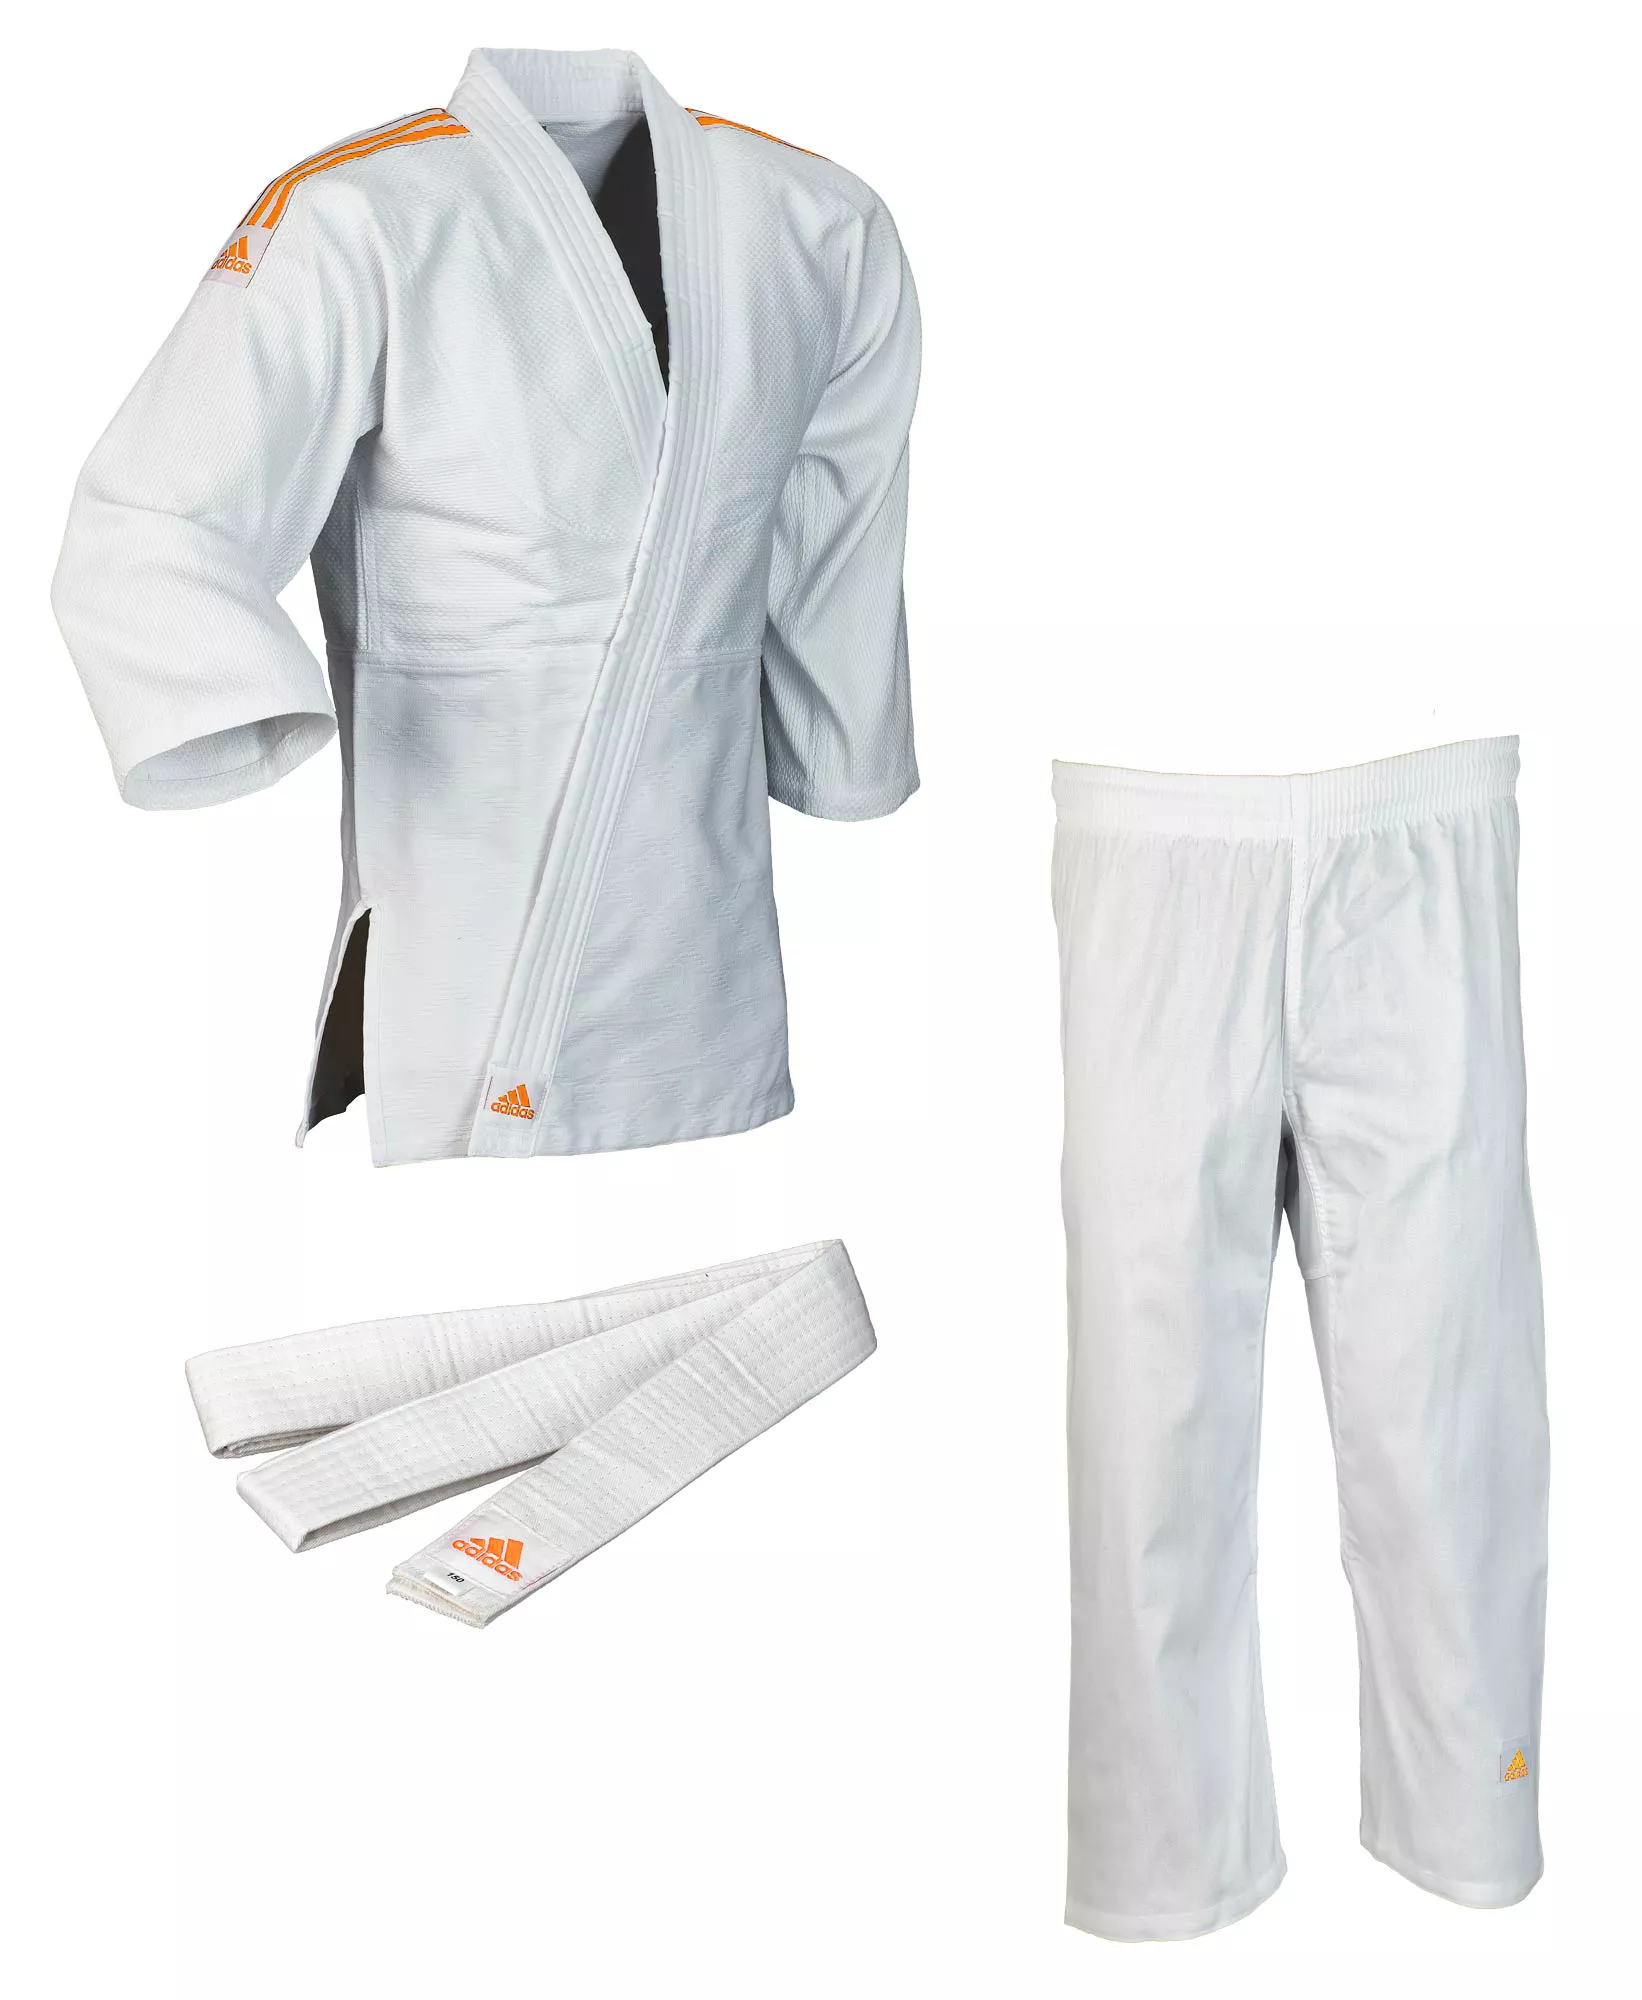 Кимоно для дзюдо Adidas Club Белое с оранжевыми полосами J350PK_WB-130